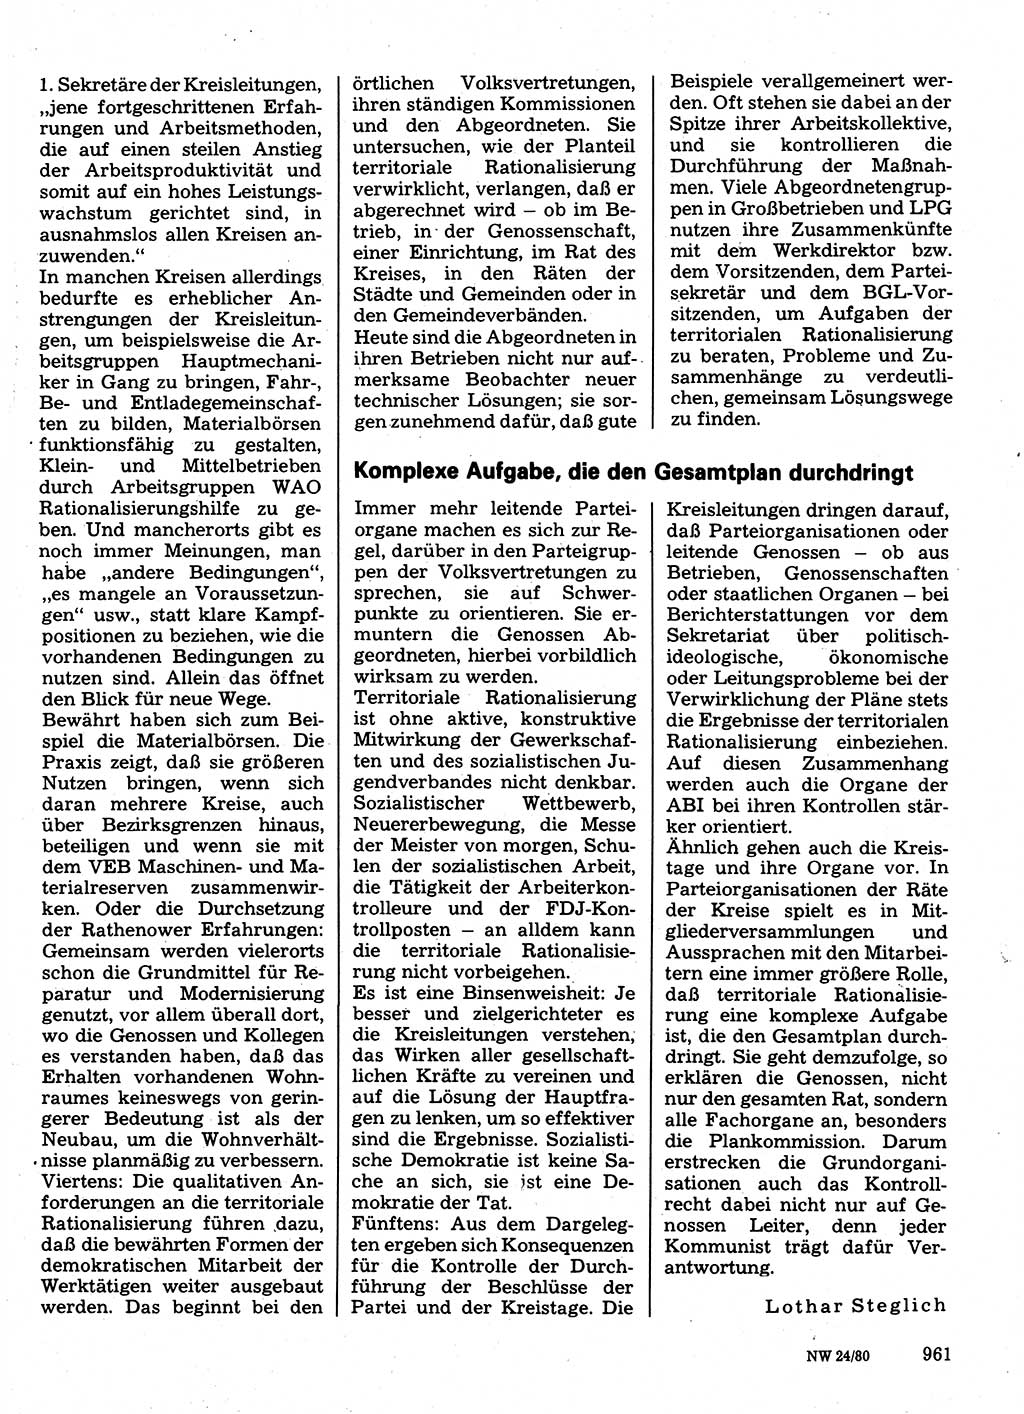 Neuer Weg (NW), Organ des Zentralkomitees (ZK) der SED (Sozialistische Einheitspartei Deutschlands) für Fragen des Parteilebens, 35. Jahrgang [Deutsche Demokratische Republik (DDR)] 1980, Seite 961 (NW ZK SED DDR 1980, S. 961)